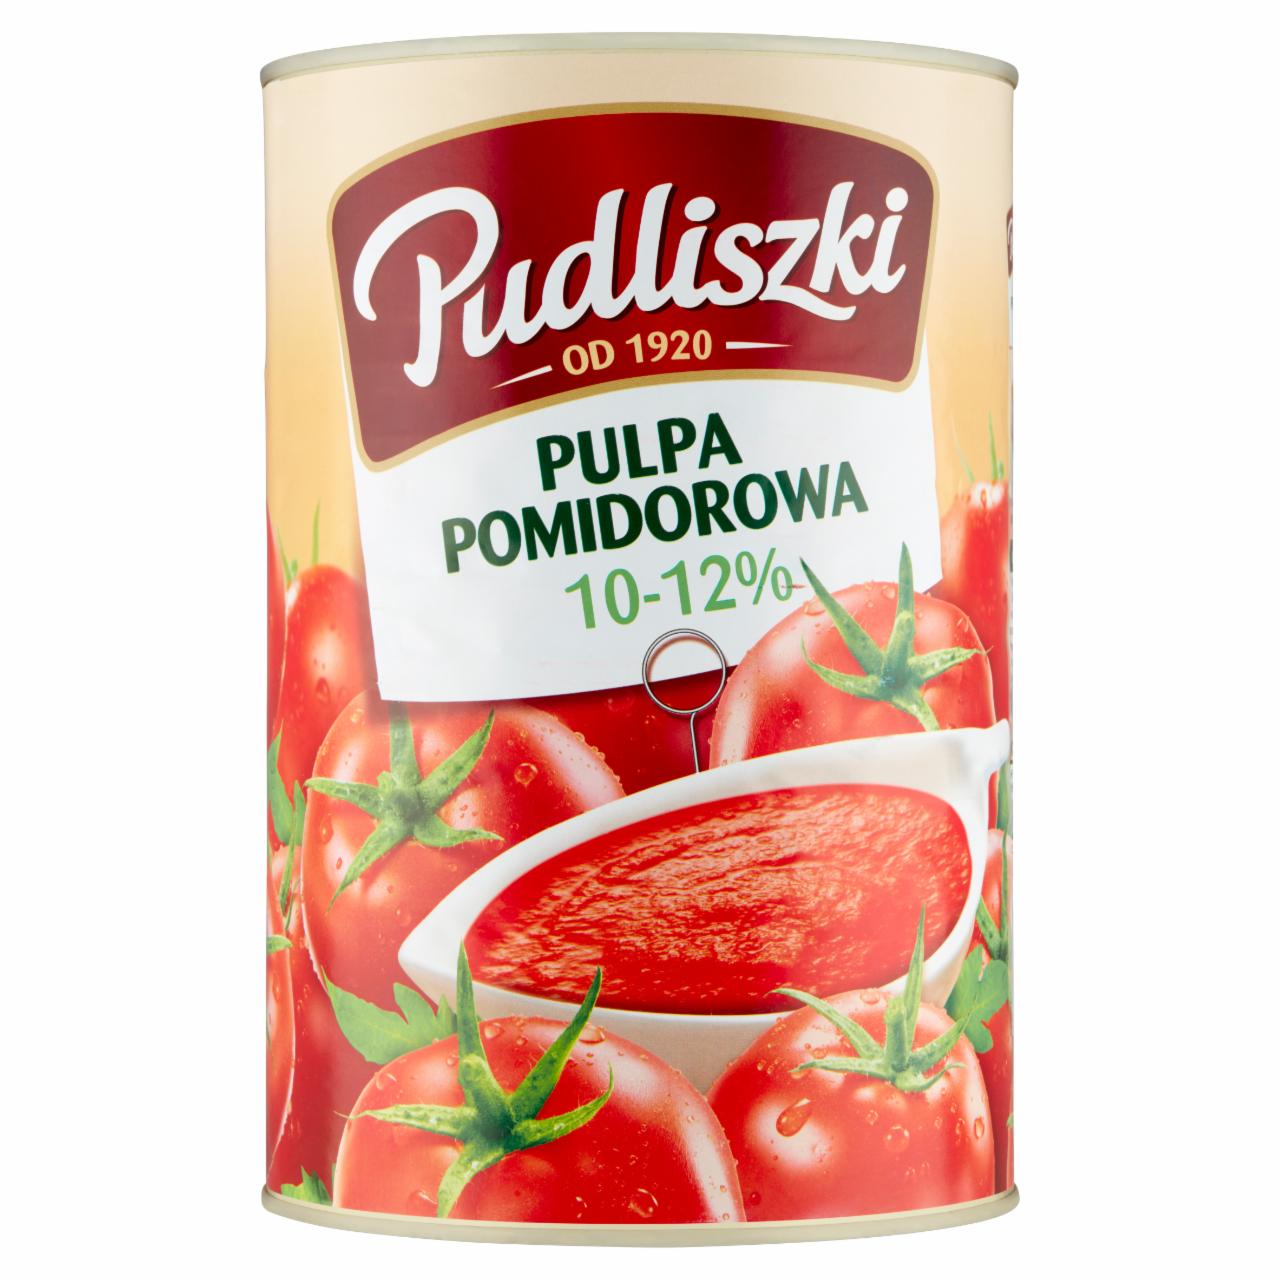 Zdjęcia - Pudliszki Pulpa pomidorowa 10-12% 4,1 kg